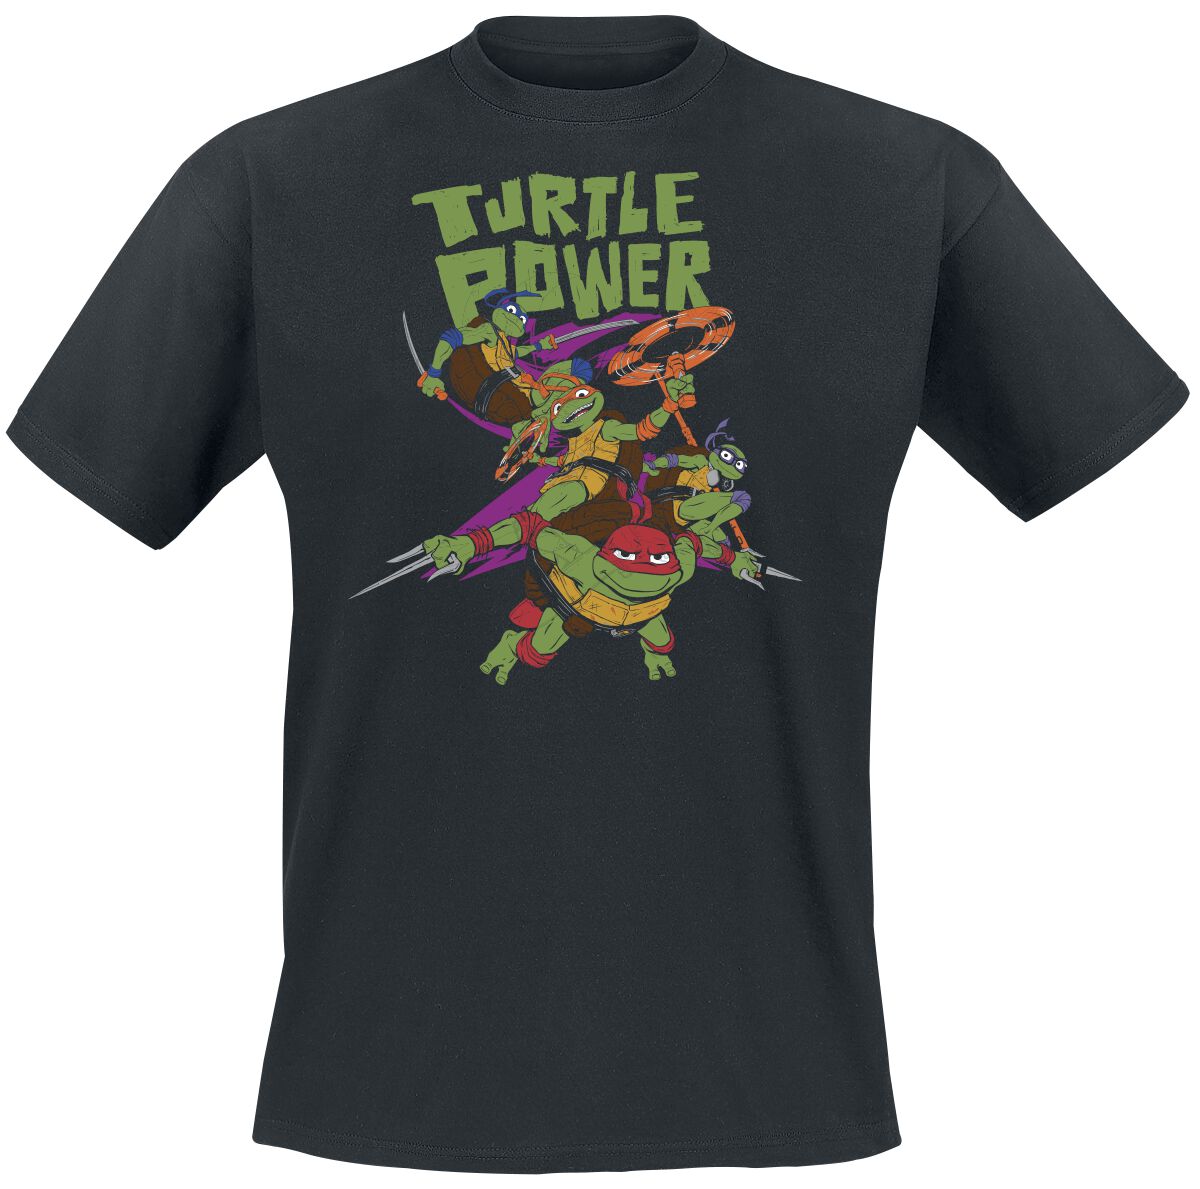 Teenage Mutant Ninja Turtles T-Shirt - Turtle Power - S bis L - für Männer - Größe M - schwarz  - EMP exklusives Merchandise! von Teenage Mutant Ninja Turtles